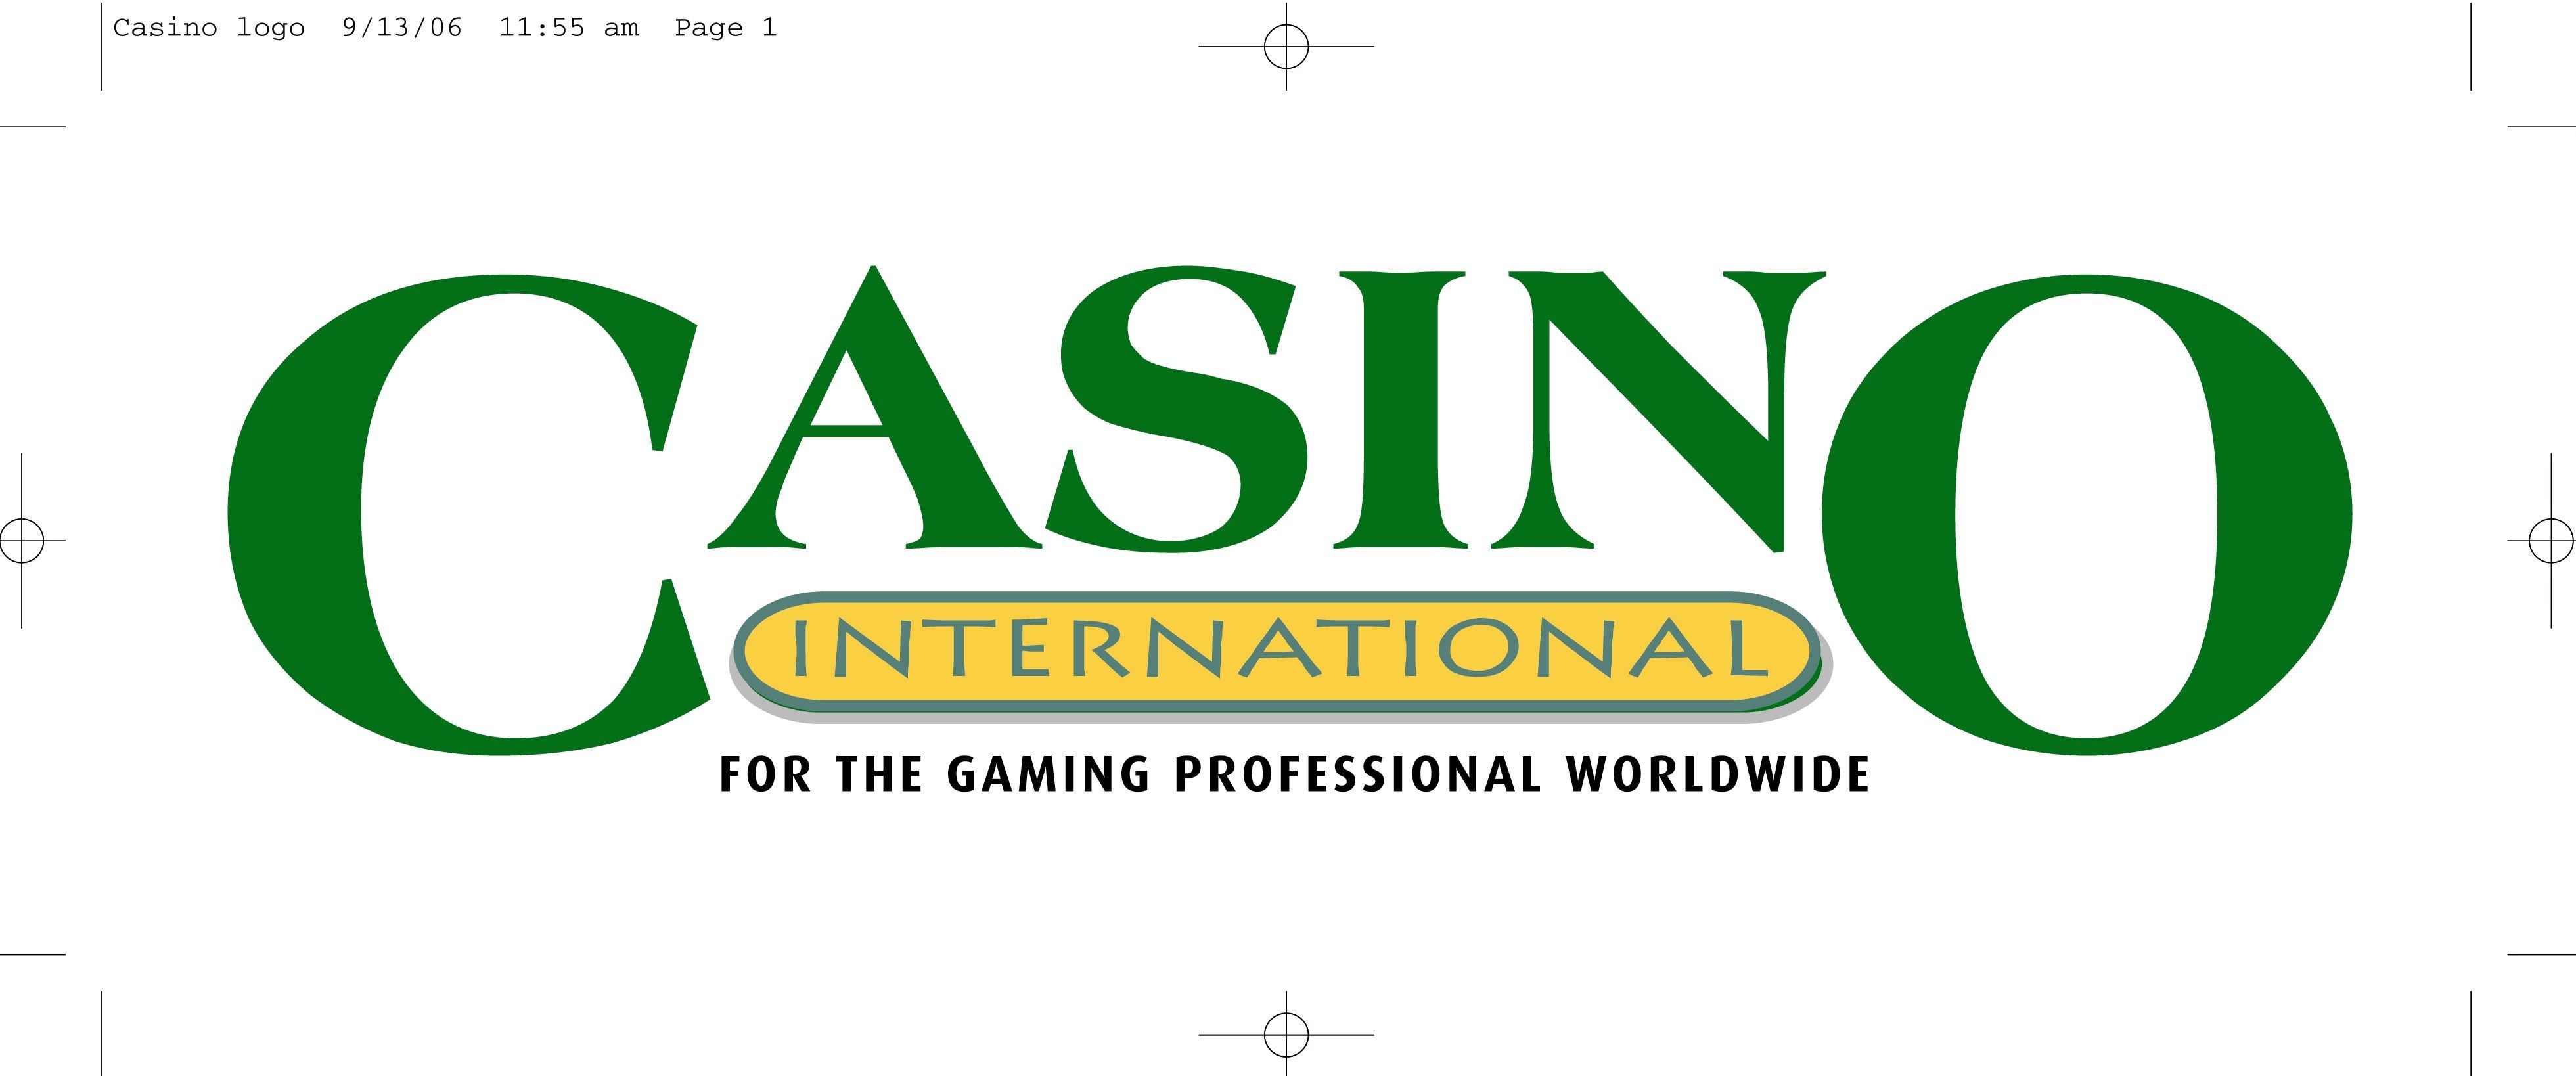 Casino International Magazine